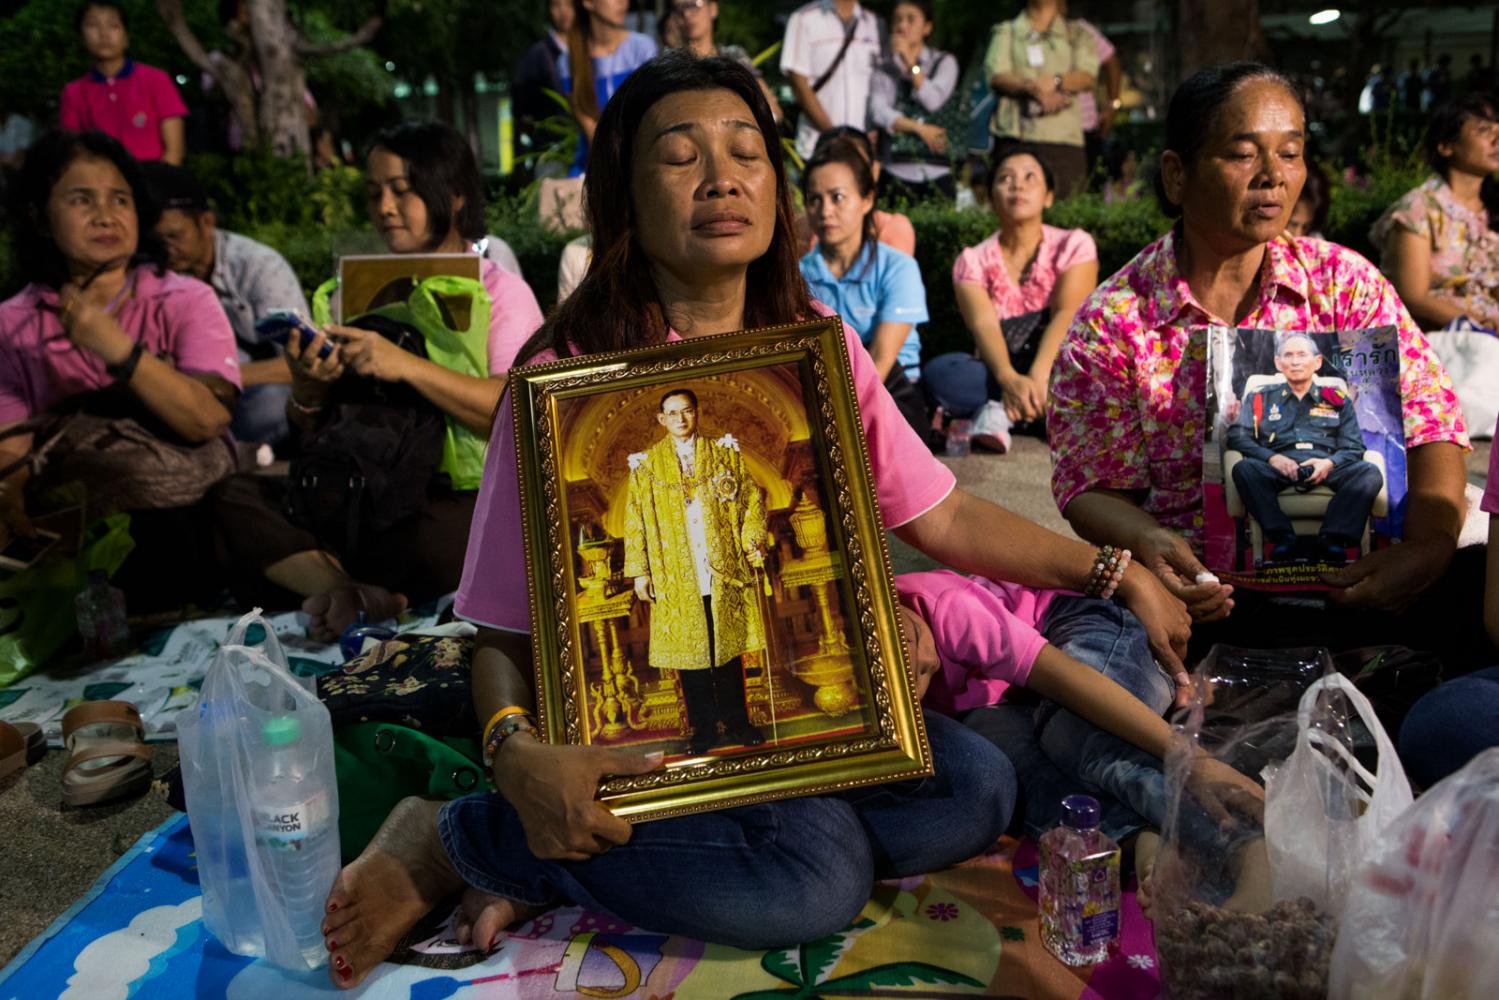 Image from Singles - Mourning Thailand's King Bhumibol Adulyadej